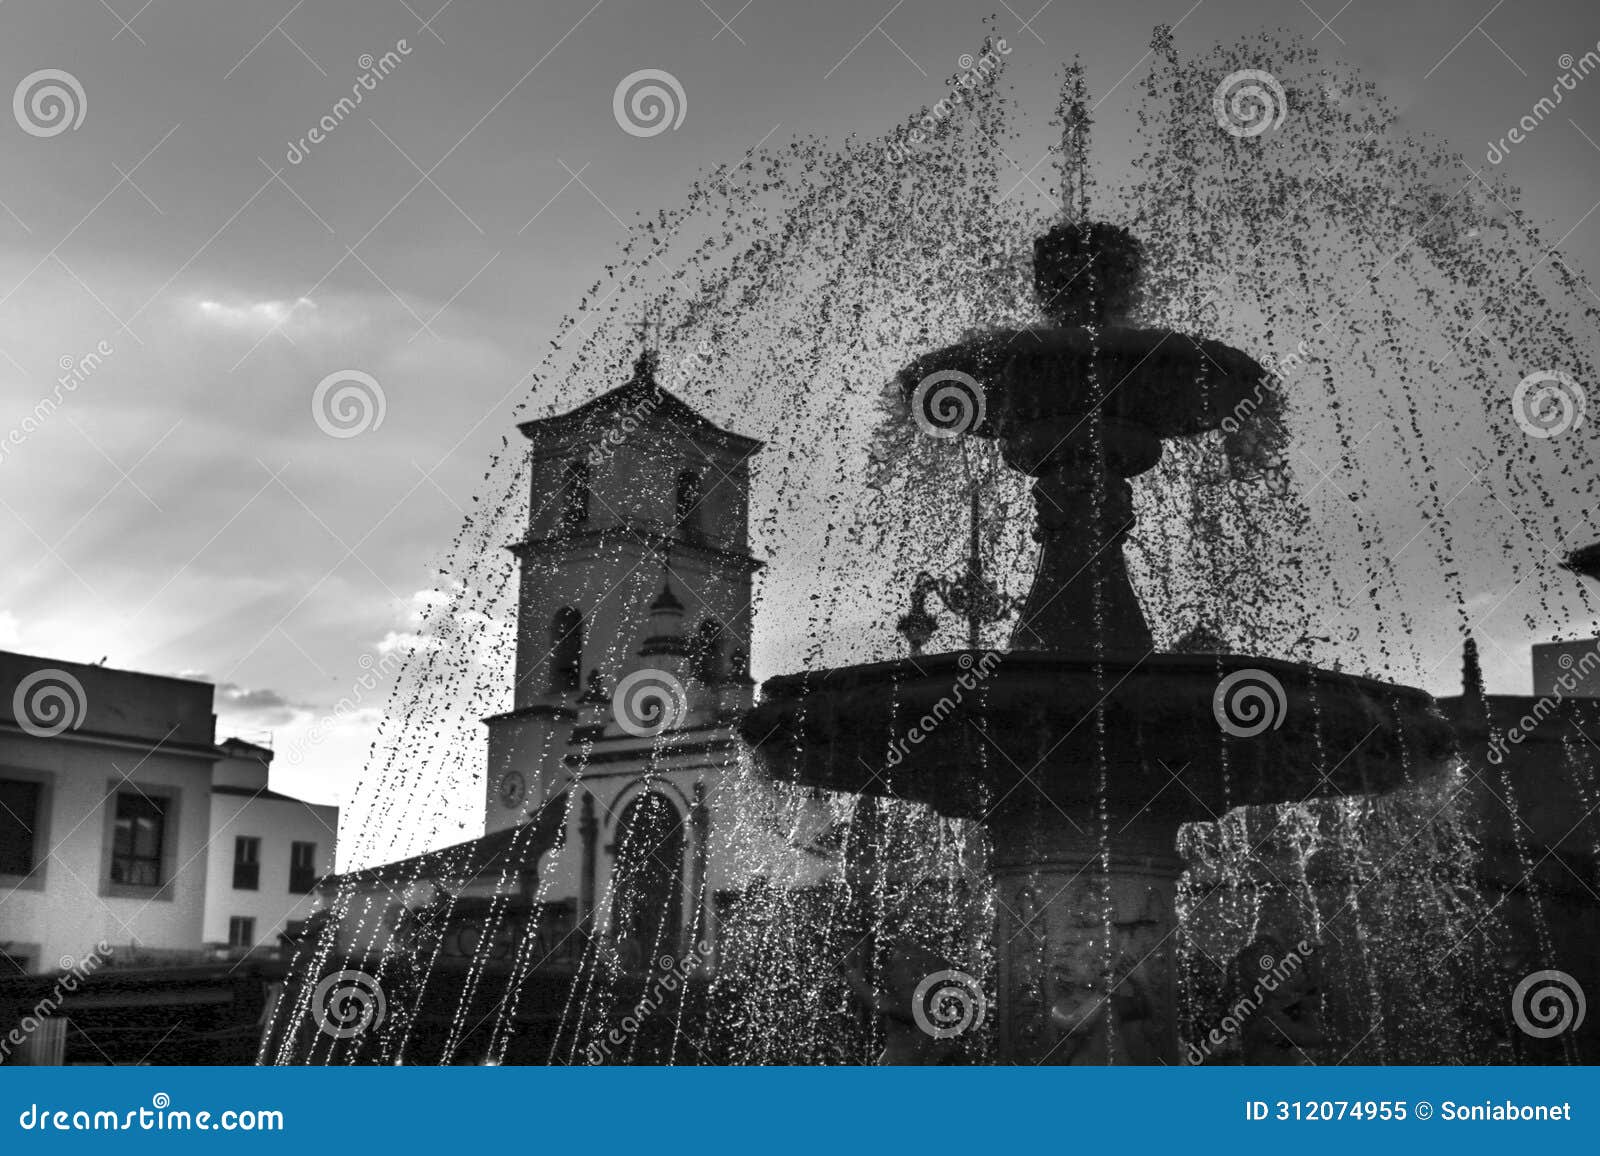 neobaroque marble fountain in plaza de espana square in merida